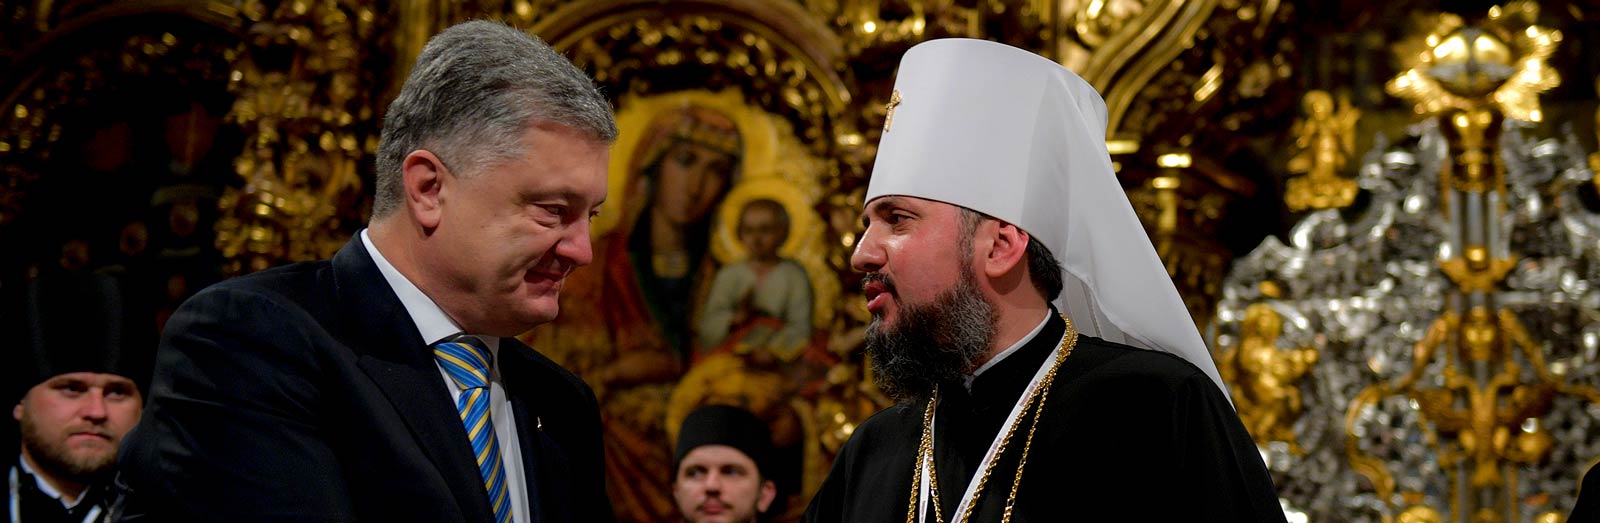 Автокефалия Православной Церкви Украины: как это было